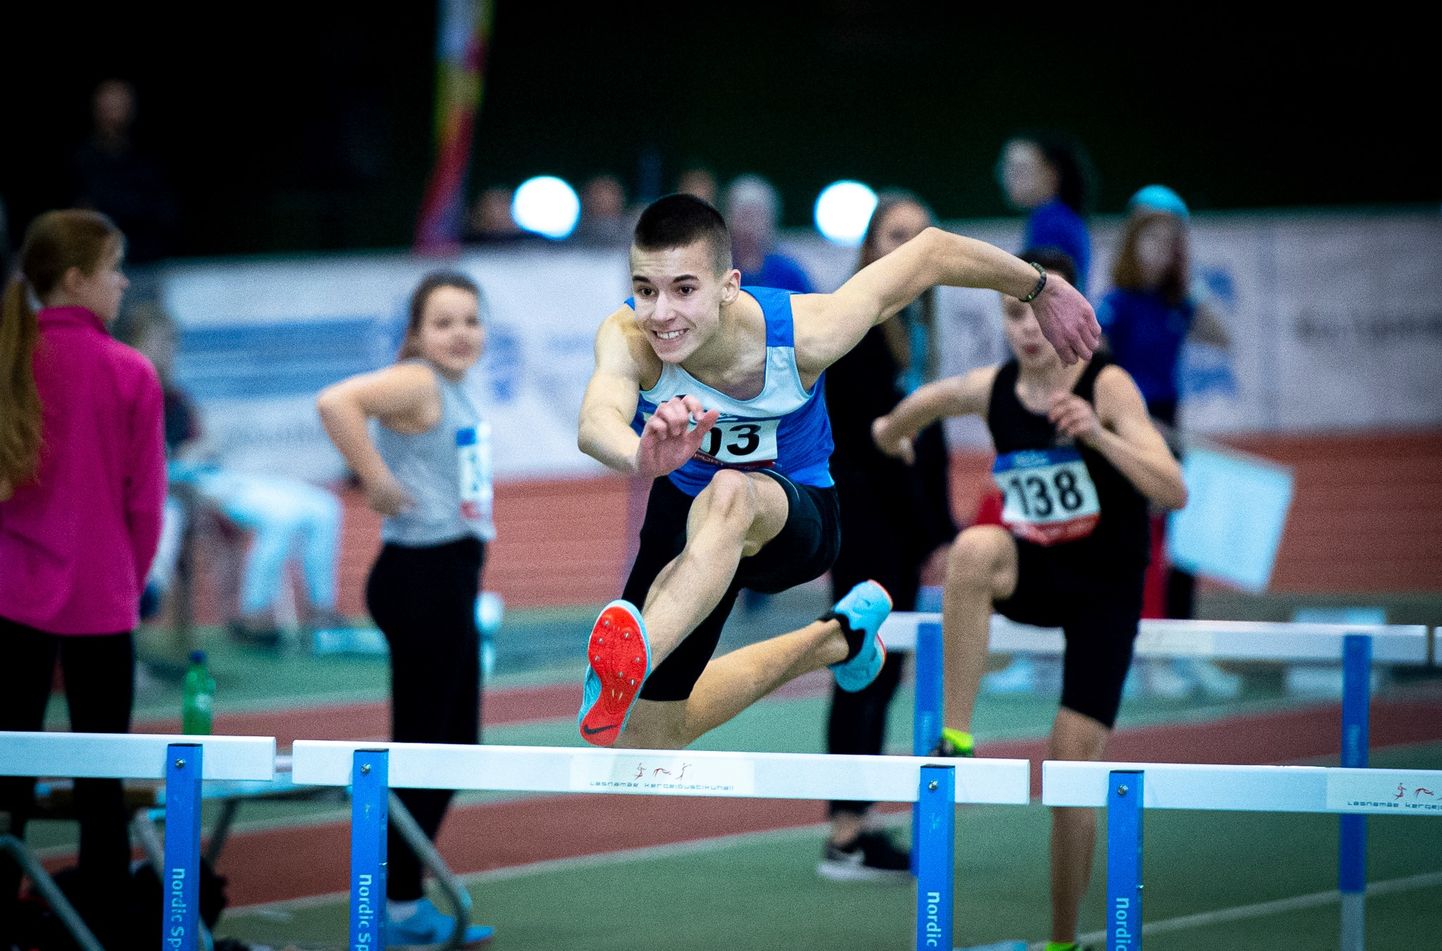 Ka tõkkejooksus püstitas Savva Novikov isikliku rekordi.